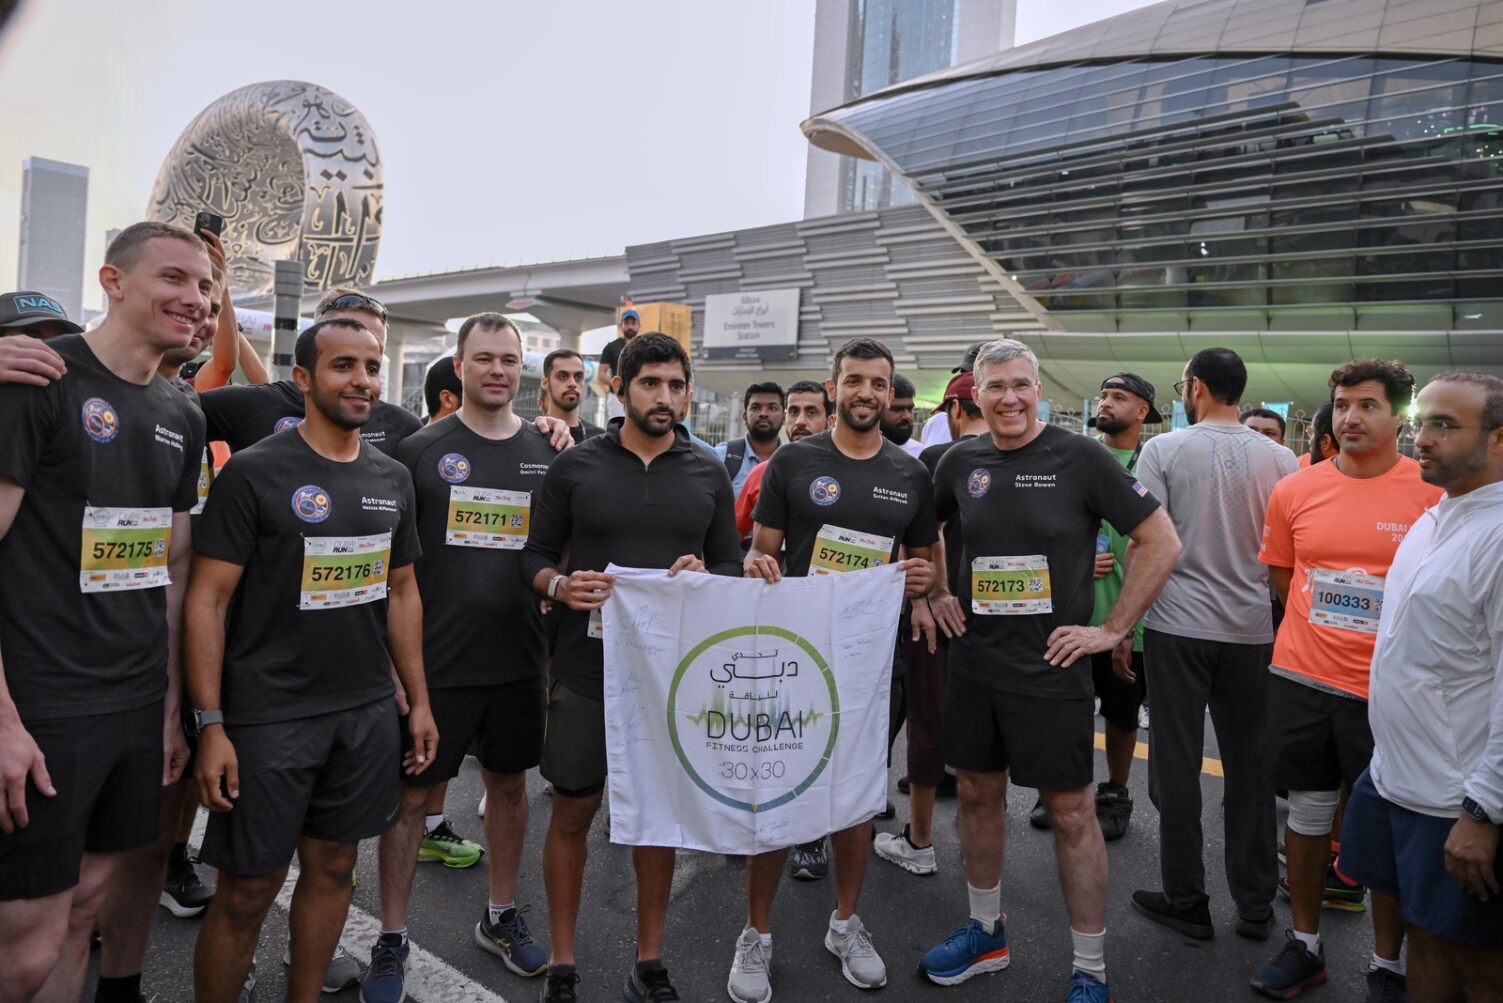 Хамдан бин Мохаммед возглавляет Дубайский беговой забег, в котором принимают участие 226 000 человек в крупнейшем общественном развлекательном забеге в мире.